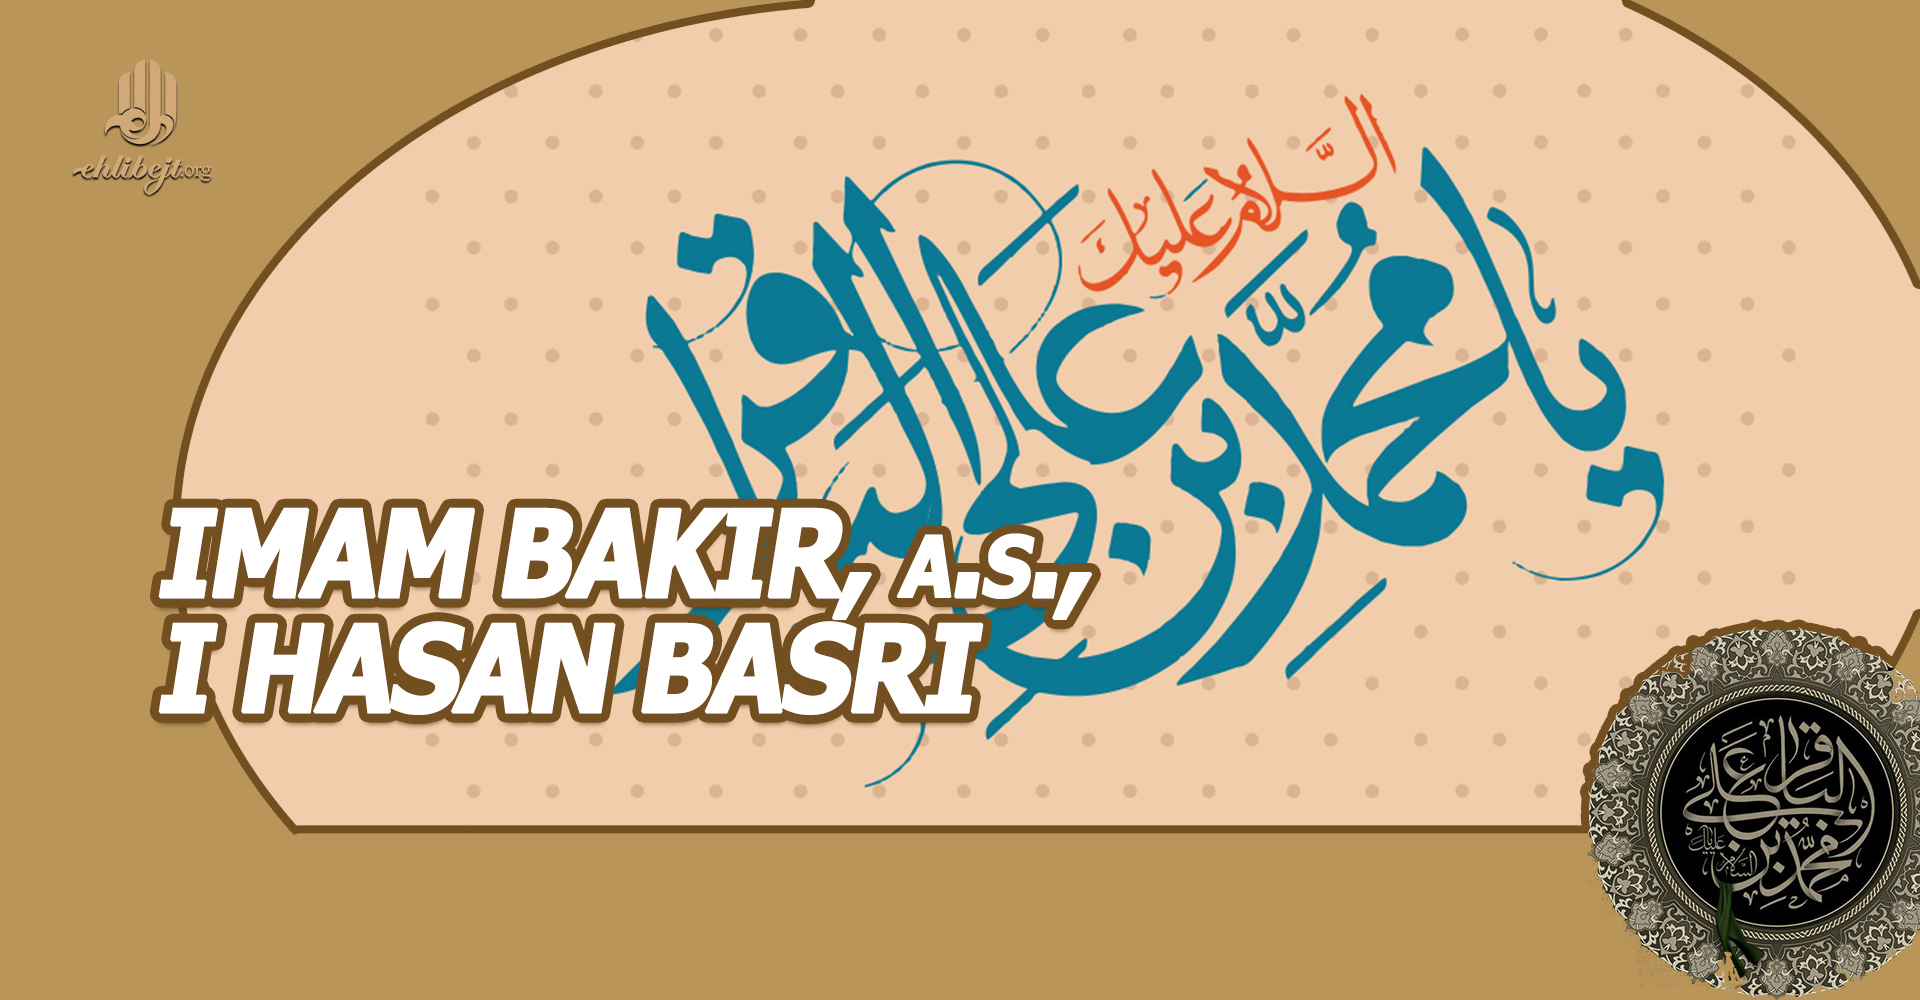 Imam Bakir, a.s., i Hasan Basri